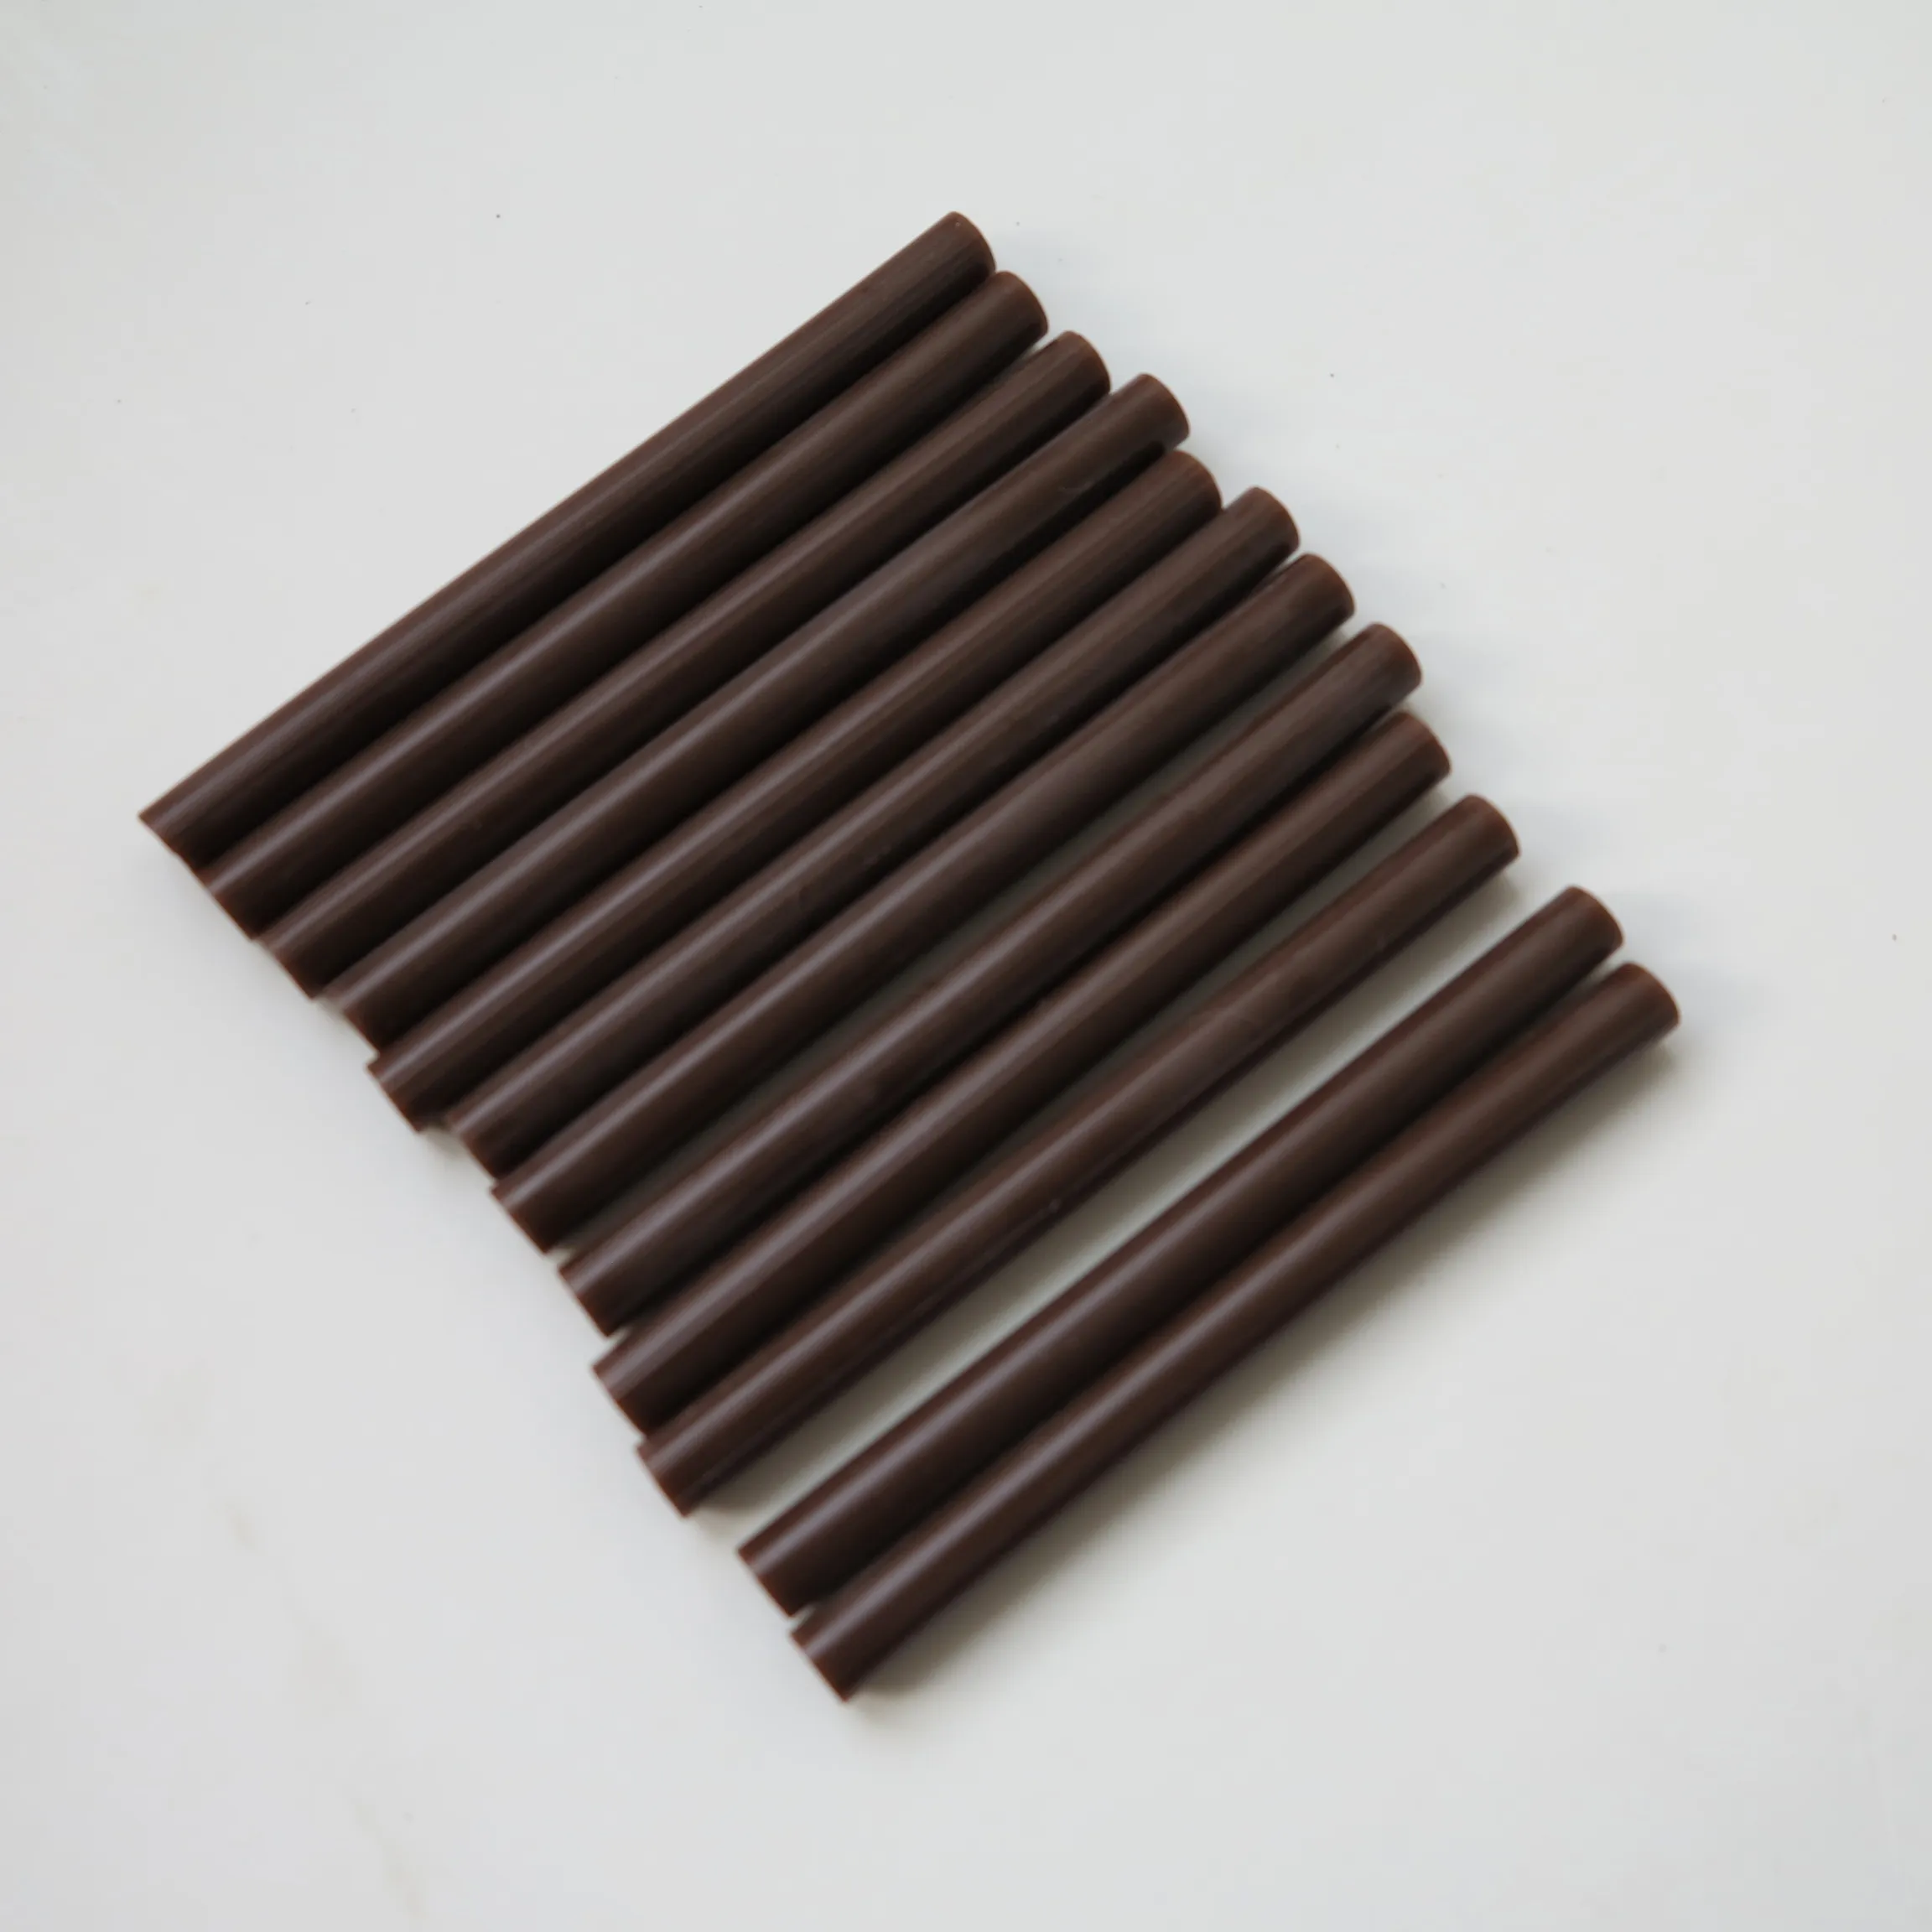 (Brown Color 7.5mm * 100mm) Billigaste Små Storlek Hot Melt Keratin Lim Sticks För Hair Extensions / Funseion Lim Sticks